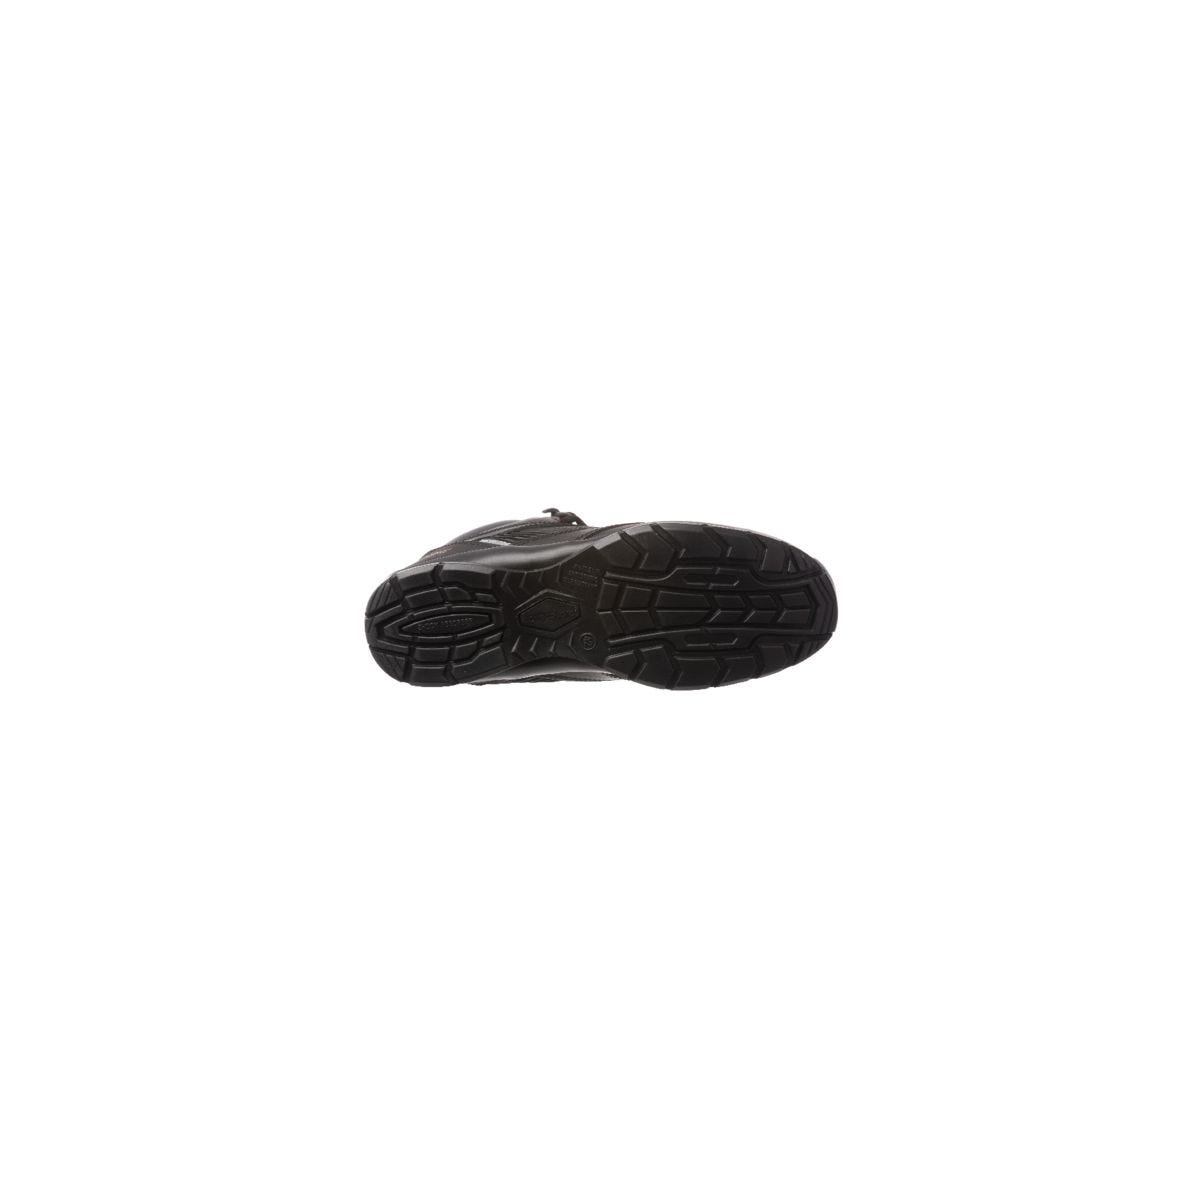 Chaussure de sécurité ASTROLITE S3 SRC haute noire composite - COVERGUARD - Taille 45 1